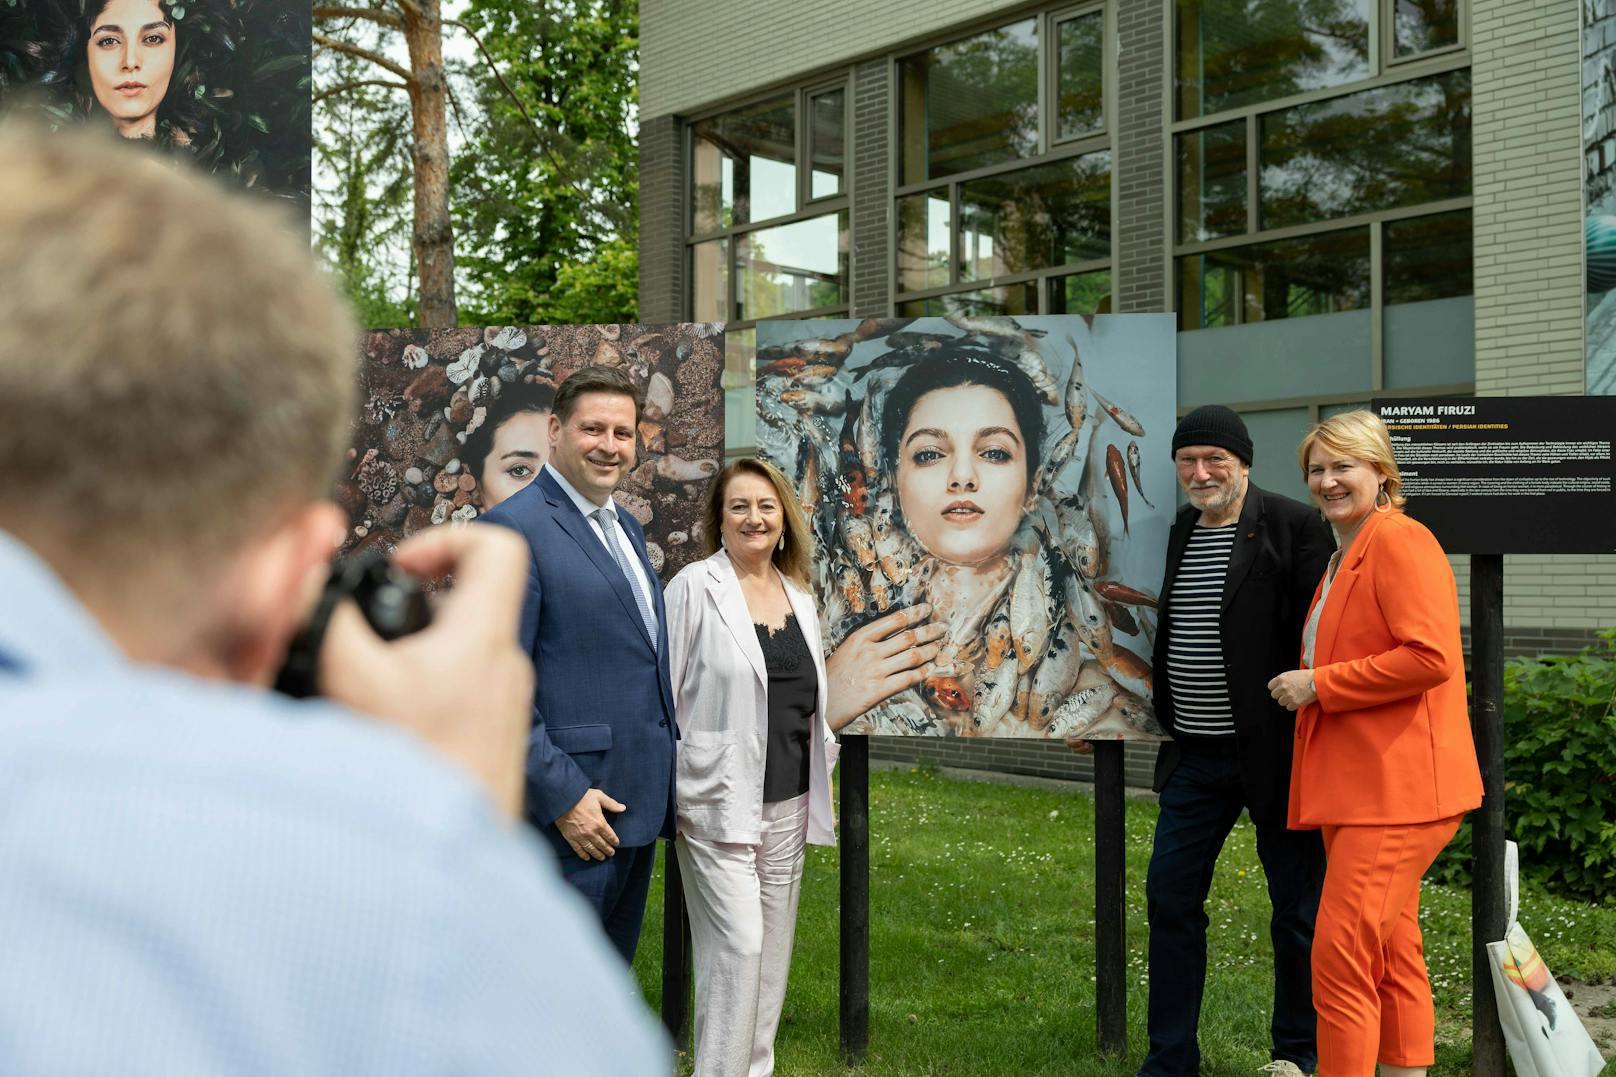 Foto-Festival in Baden: Die diesjährige Ausstellung trägt den Titel "ORIENT!"